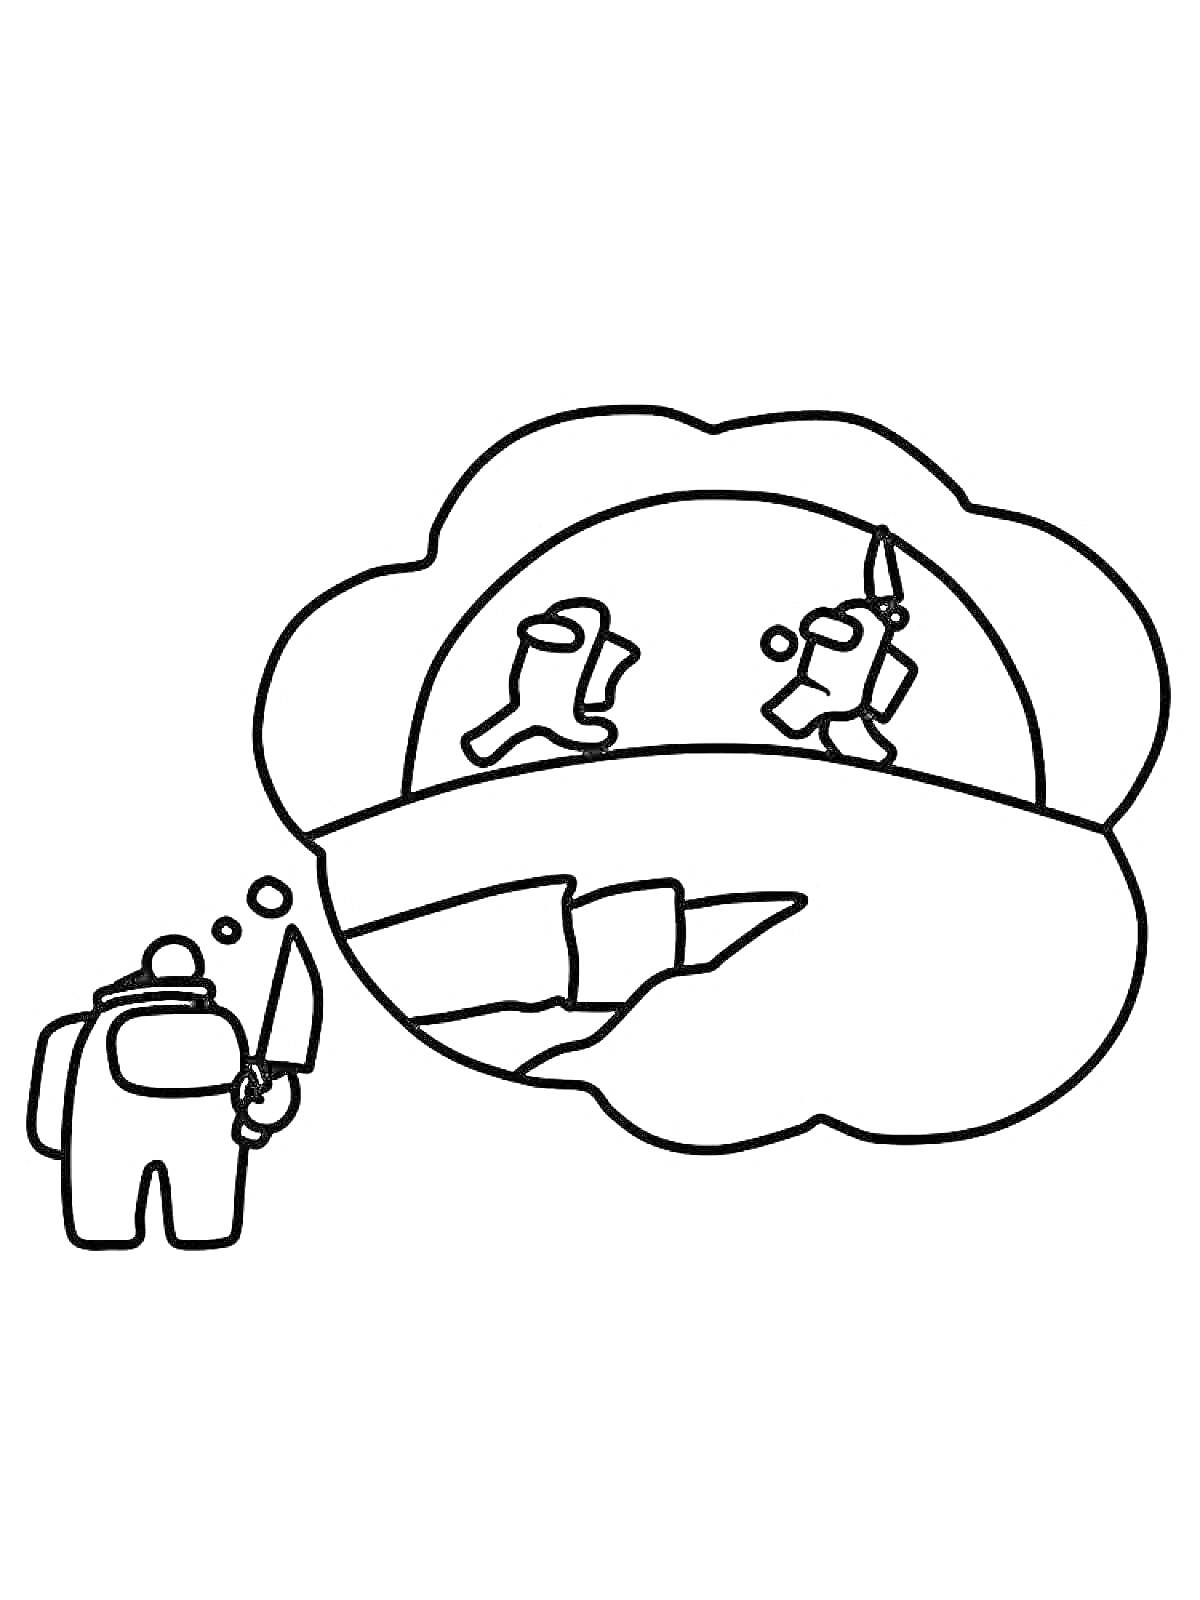 Персонаж Амонг Ас с ножом и мыслящее облачко с двумя дерущимися персонажами на фоне ущелья